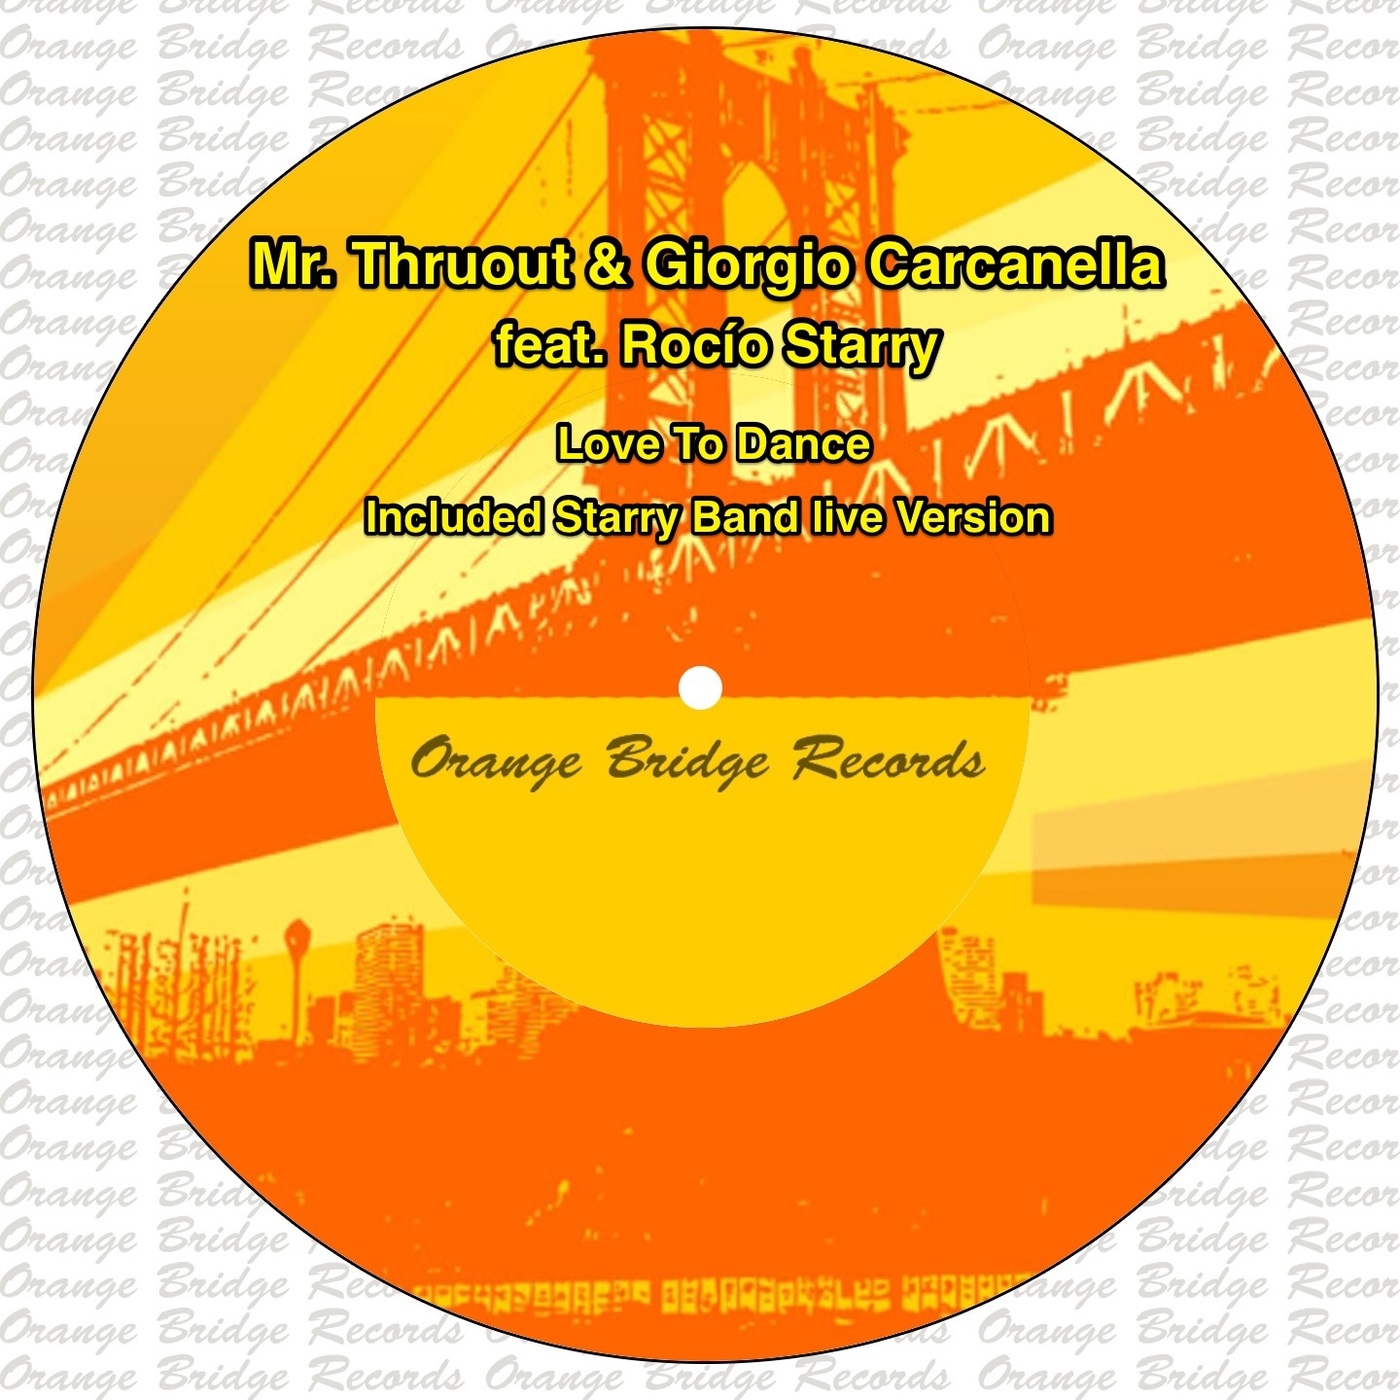 Mr. ThruouT & Giorgio Carcanella ft Rocio Starry - Love to Dance / Orange Bridge Records